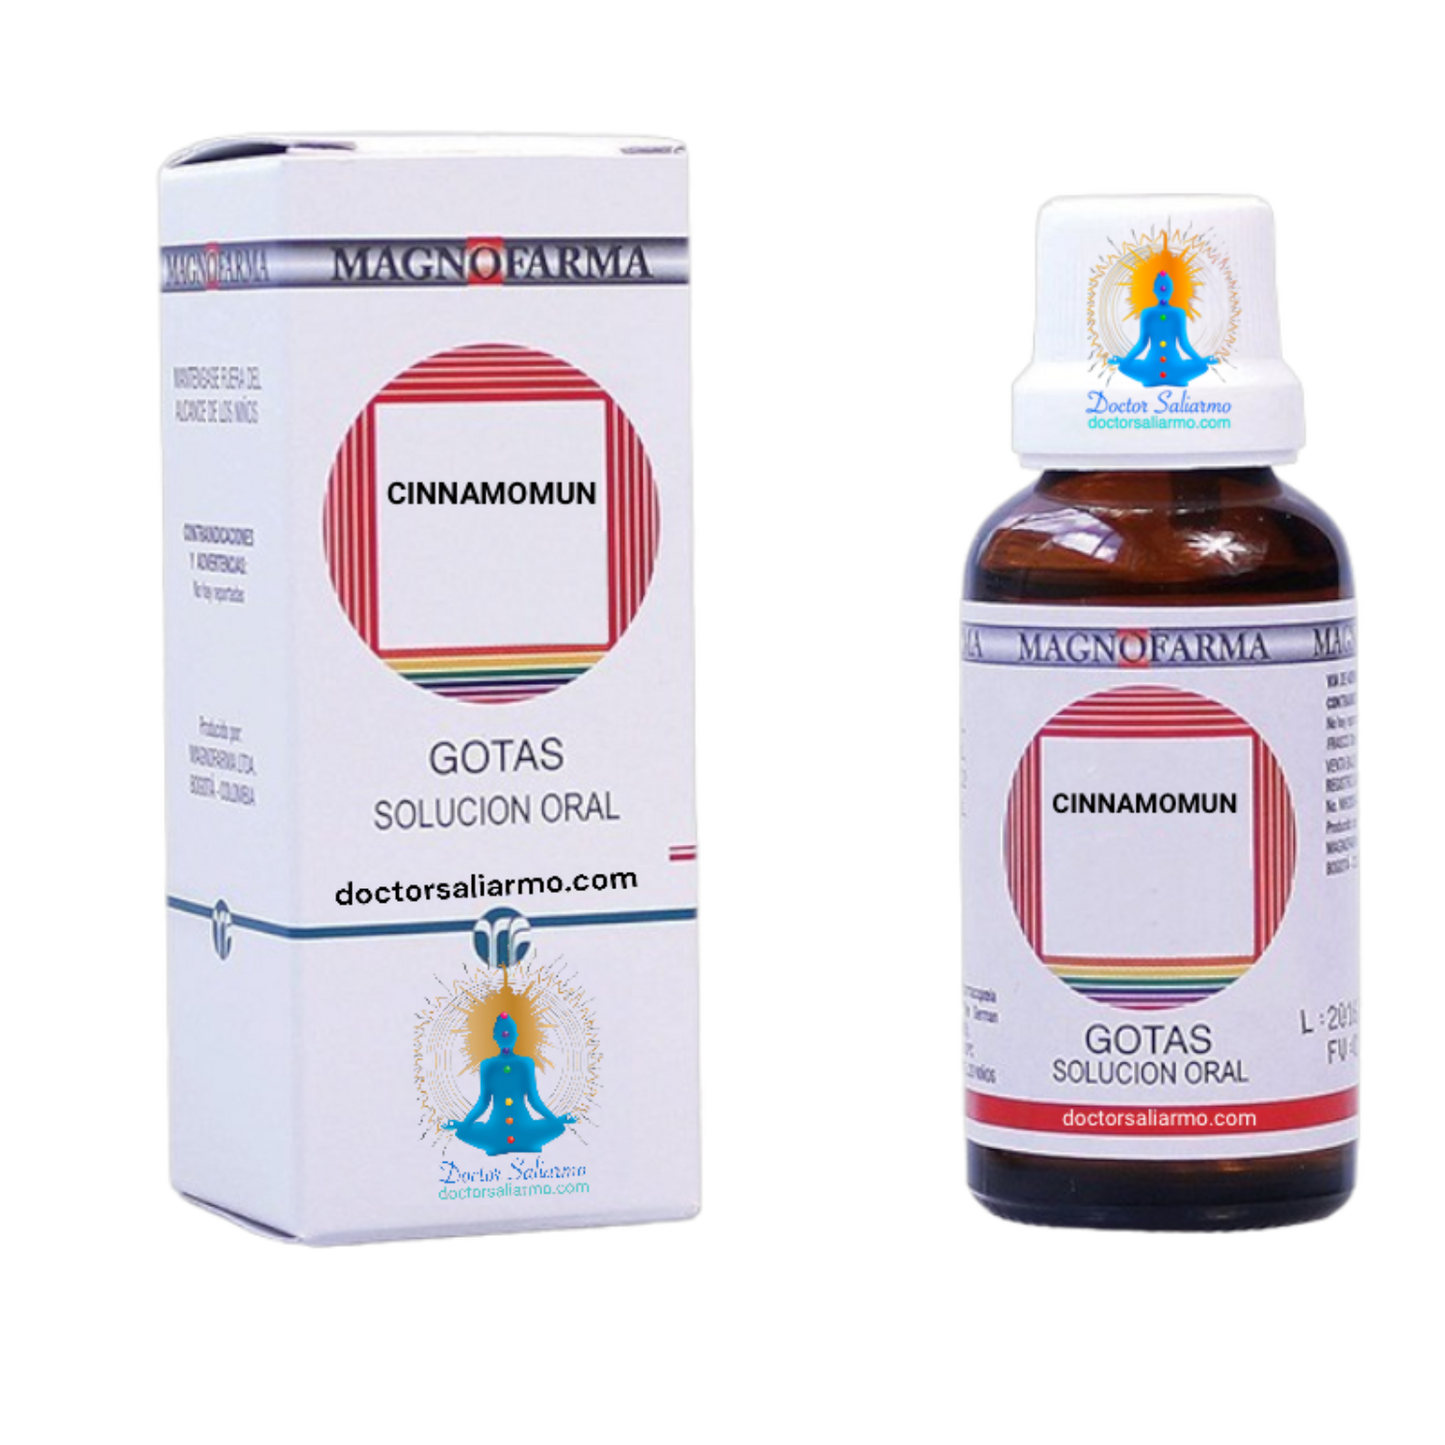 Cinnamomun multipot medicamento homeopático indicado en hemorragias capilares infiltrativas con tendencia a las petequial.